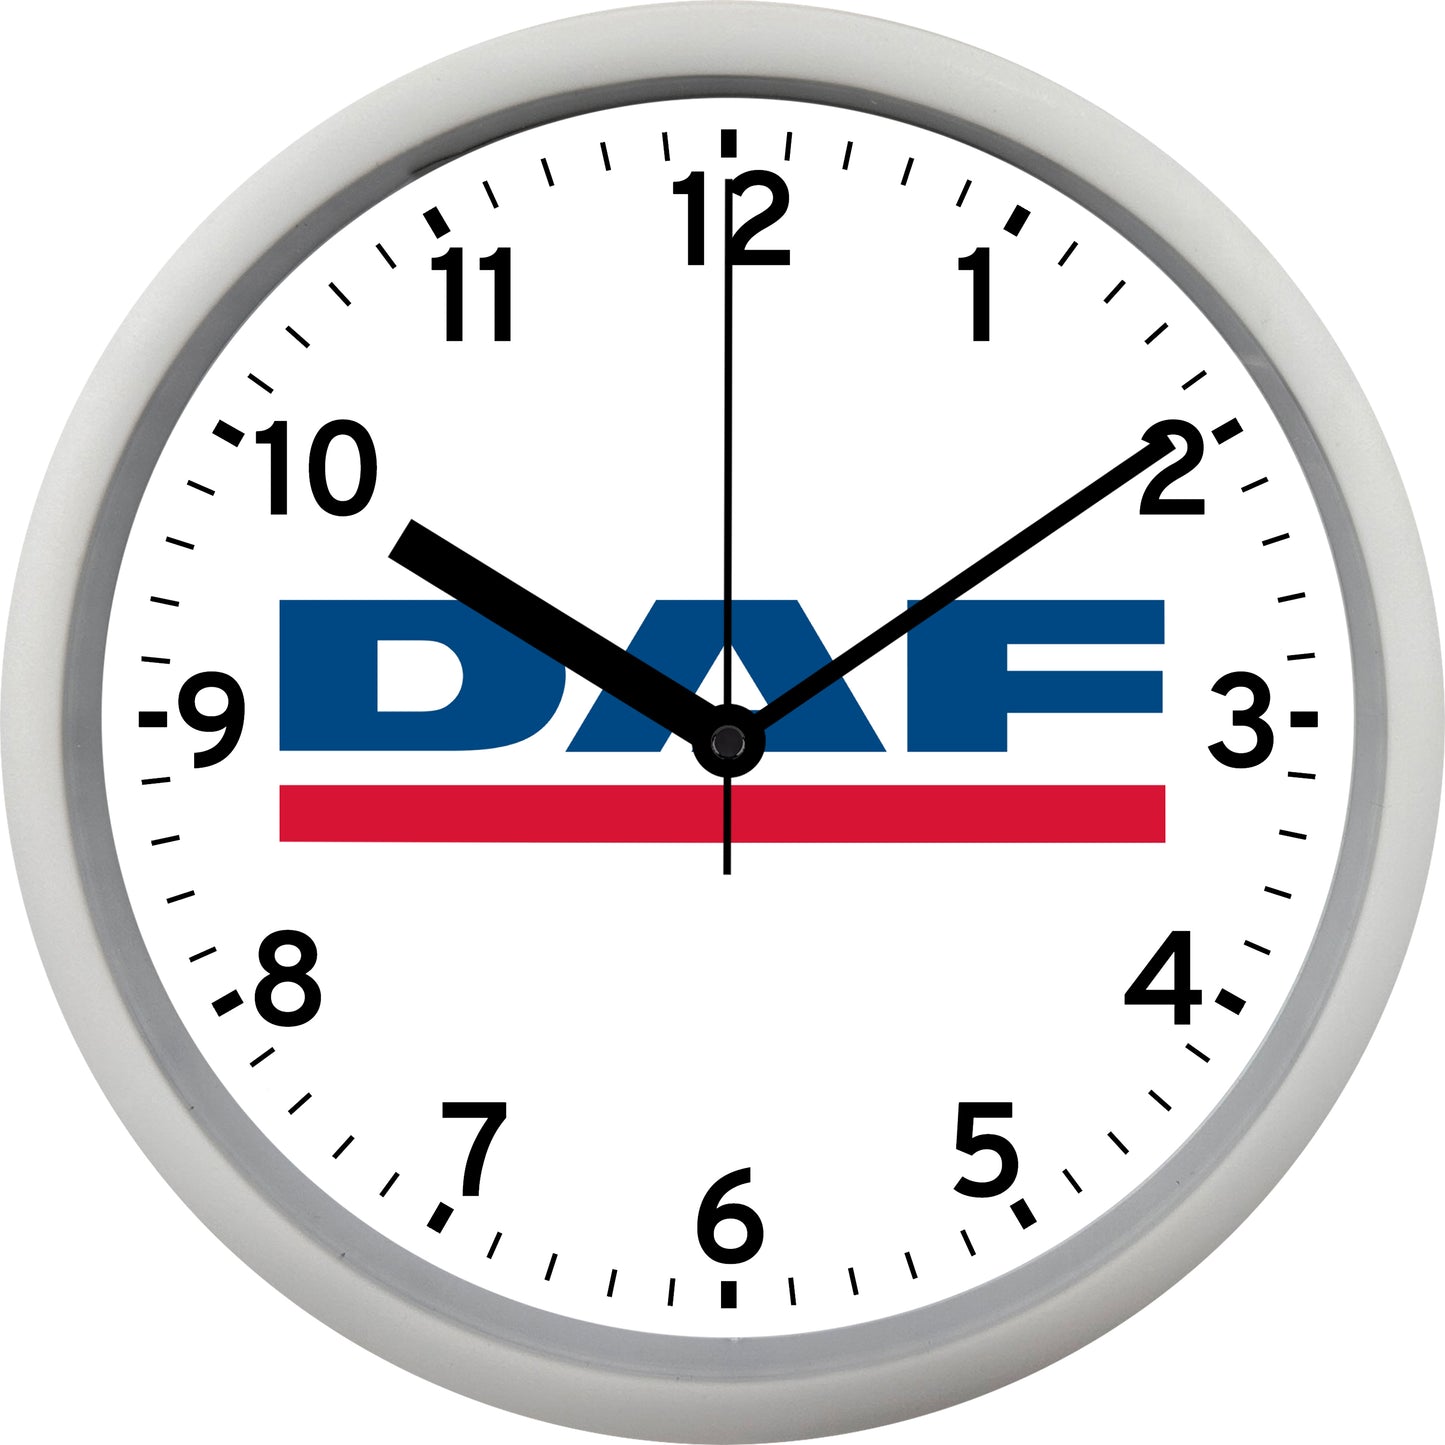 DAF Trucks Wall Clock